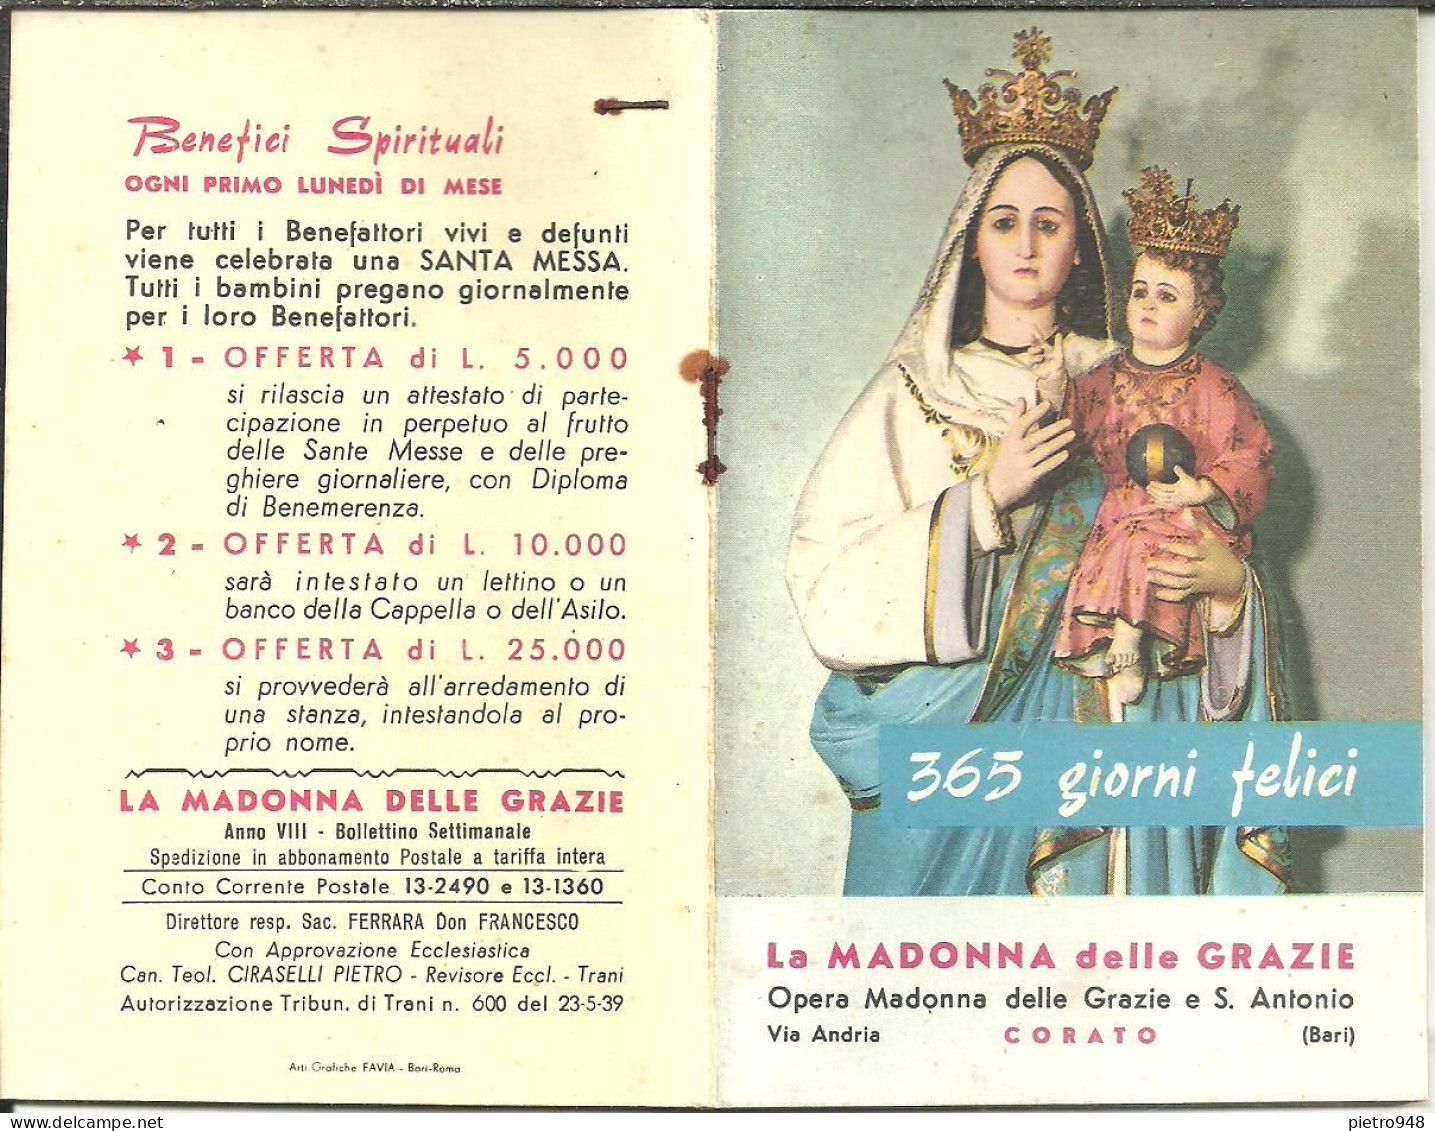 Libro (Libretto) Religioso "Opera Madonna Delle Grazie E Sant'Antonio" Corato (Bari), Agendina 1966 - Godsdienst / Spiritualisme